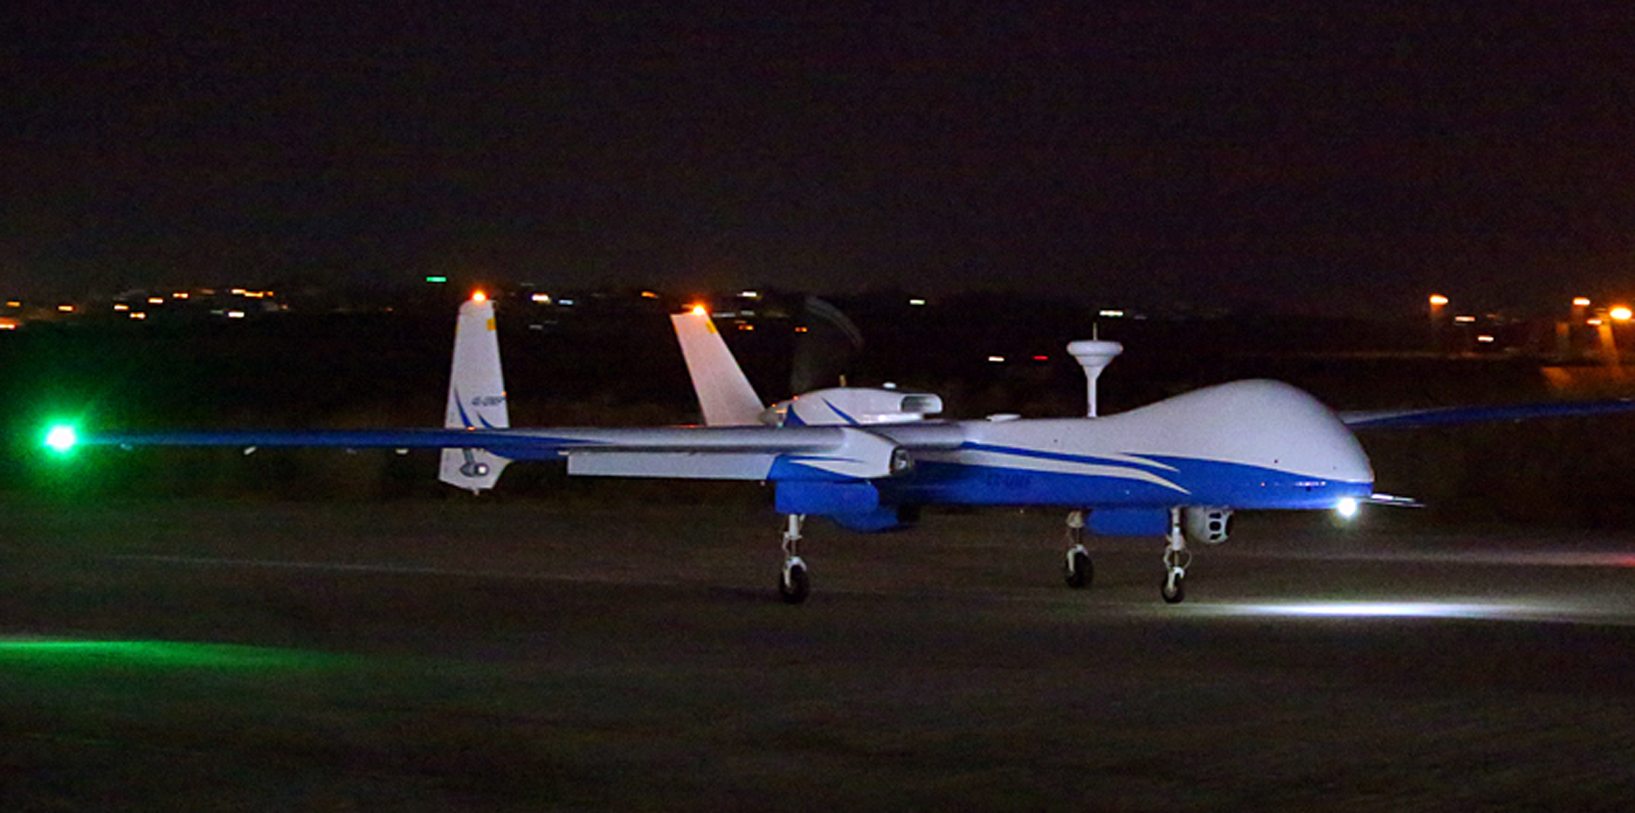 A Israel Aerospace Industries oferece aos atuais usuários do Heron uma nova plataforma de voo acompanhada de um motor alimentado a diesel como parte do pacote de modernização para o padrão Super Heron HF. (Foto IAI)